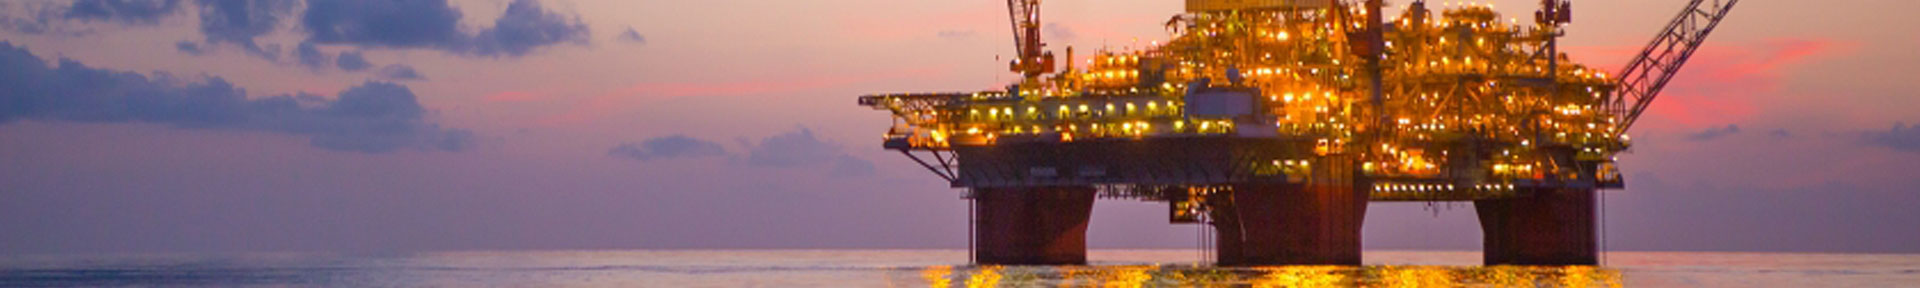 A BP offshore oil platform at dusk